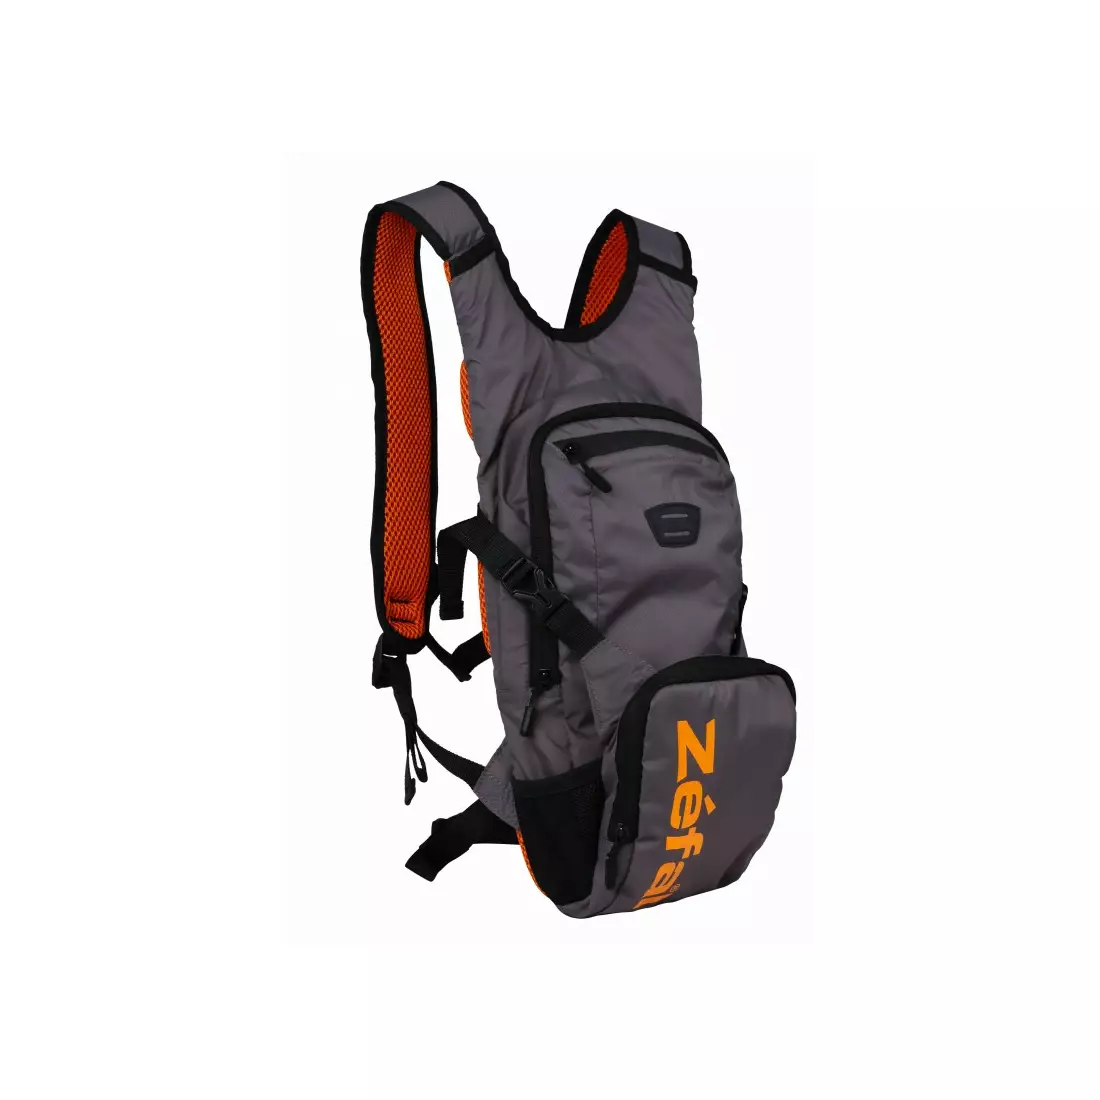 ZEFAL batoh na kolo s vodním vakem hydro xc, šedo-oranžový ZF-7056